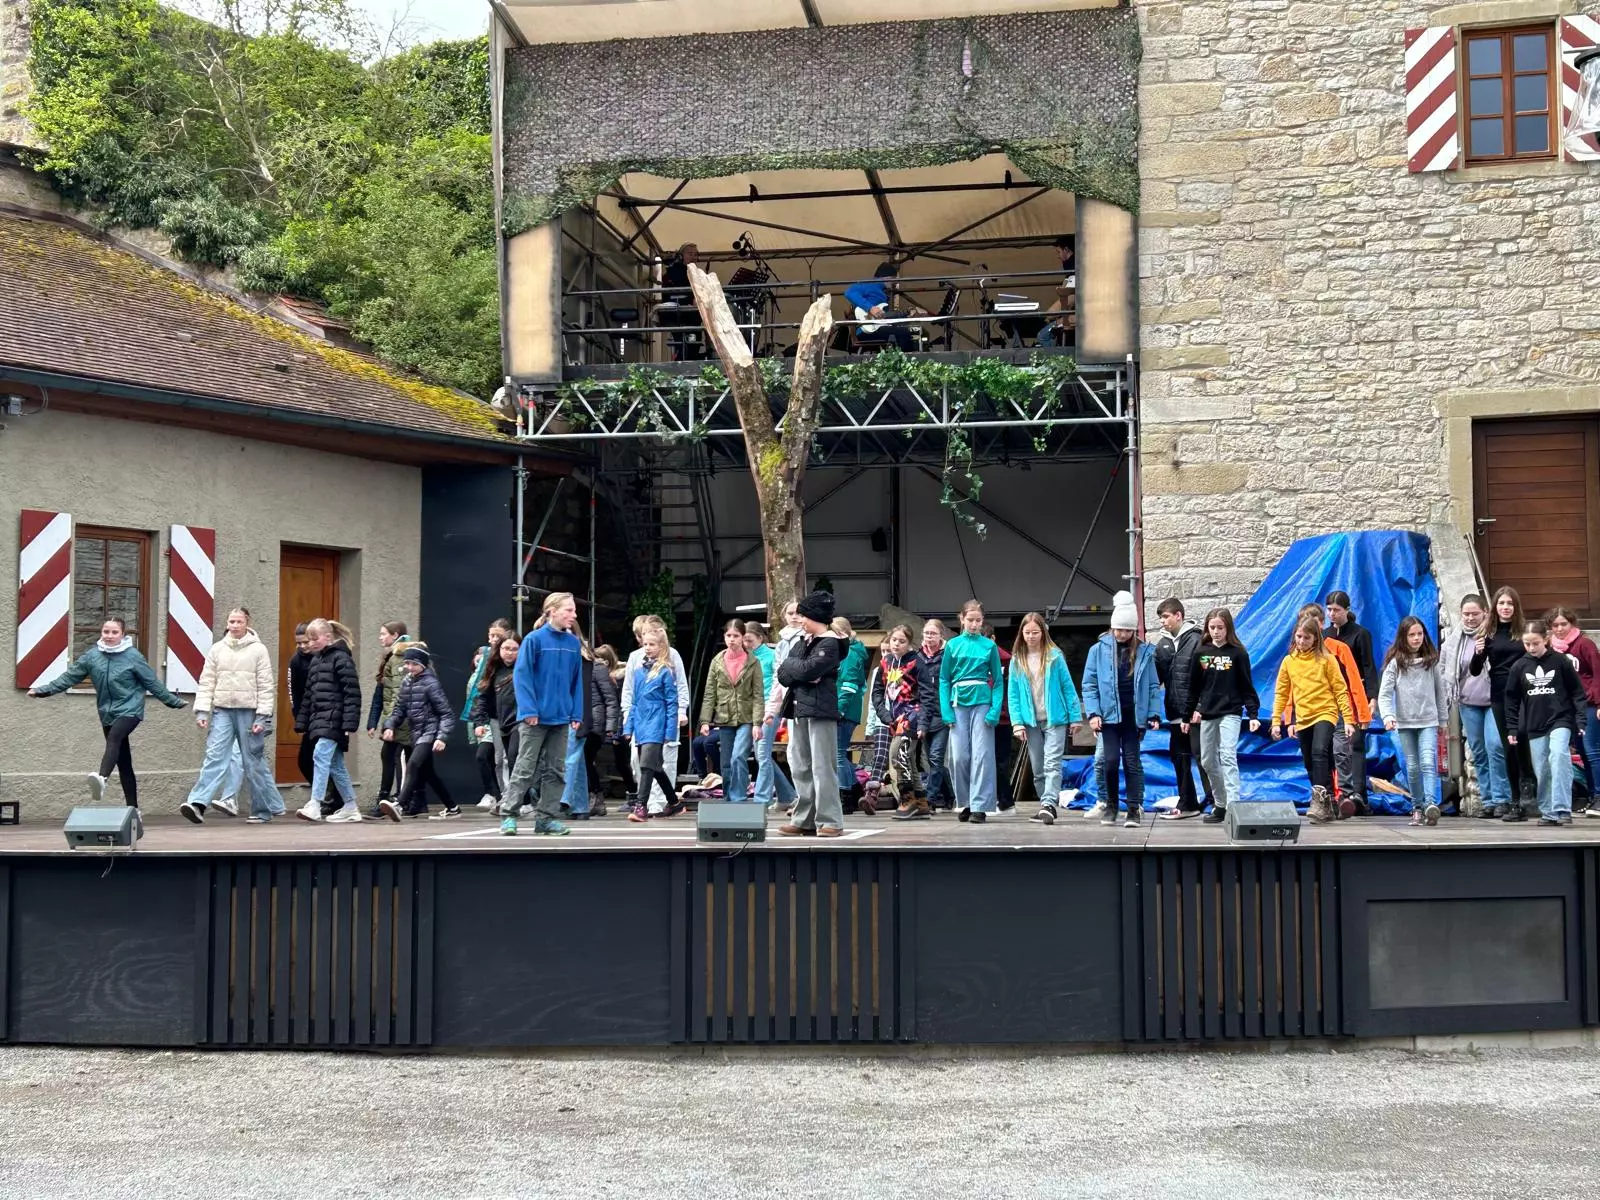 70 Kinder und Jugendliche auf der Bühne der Burg Brattenstein in Röttingen